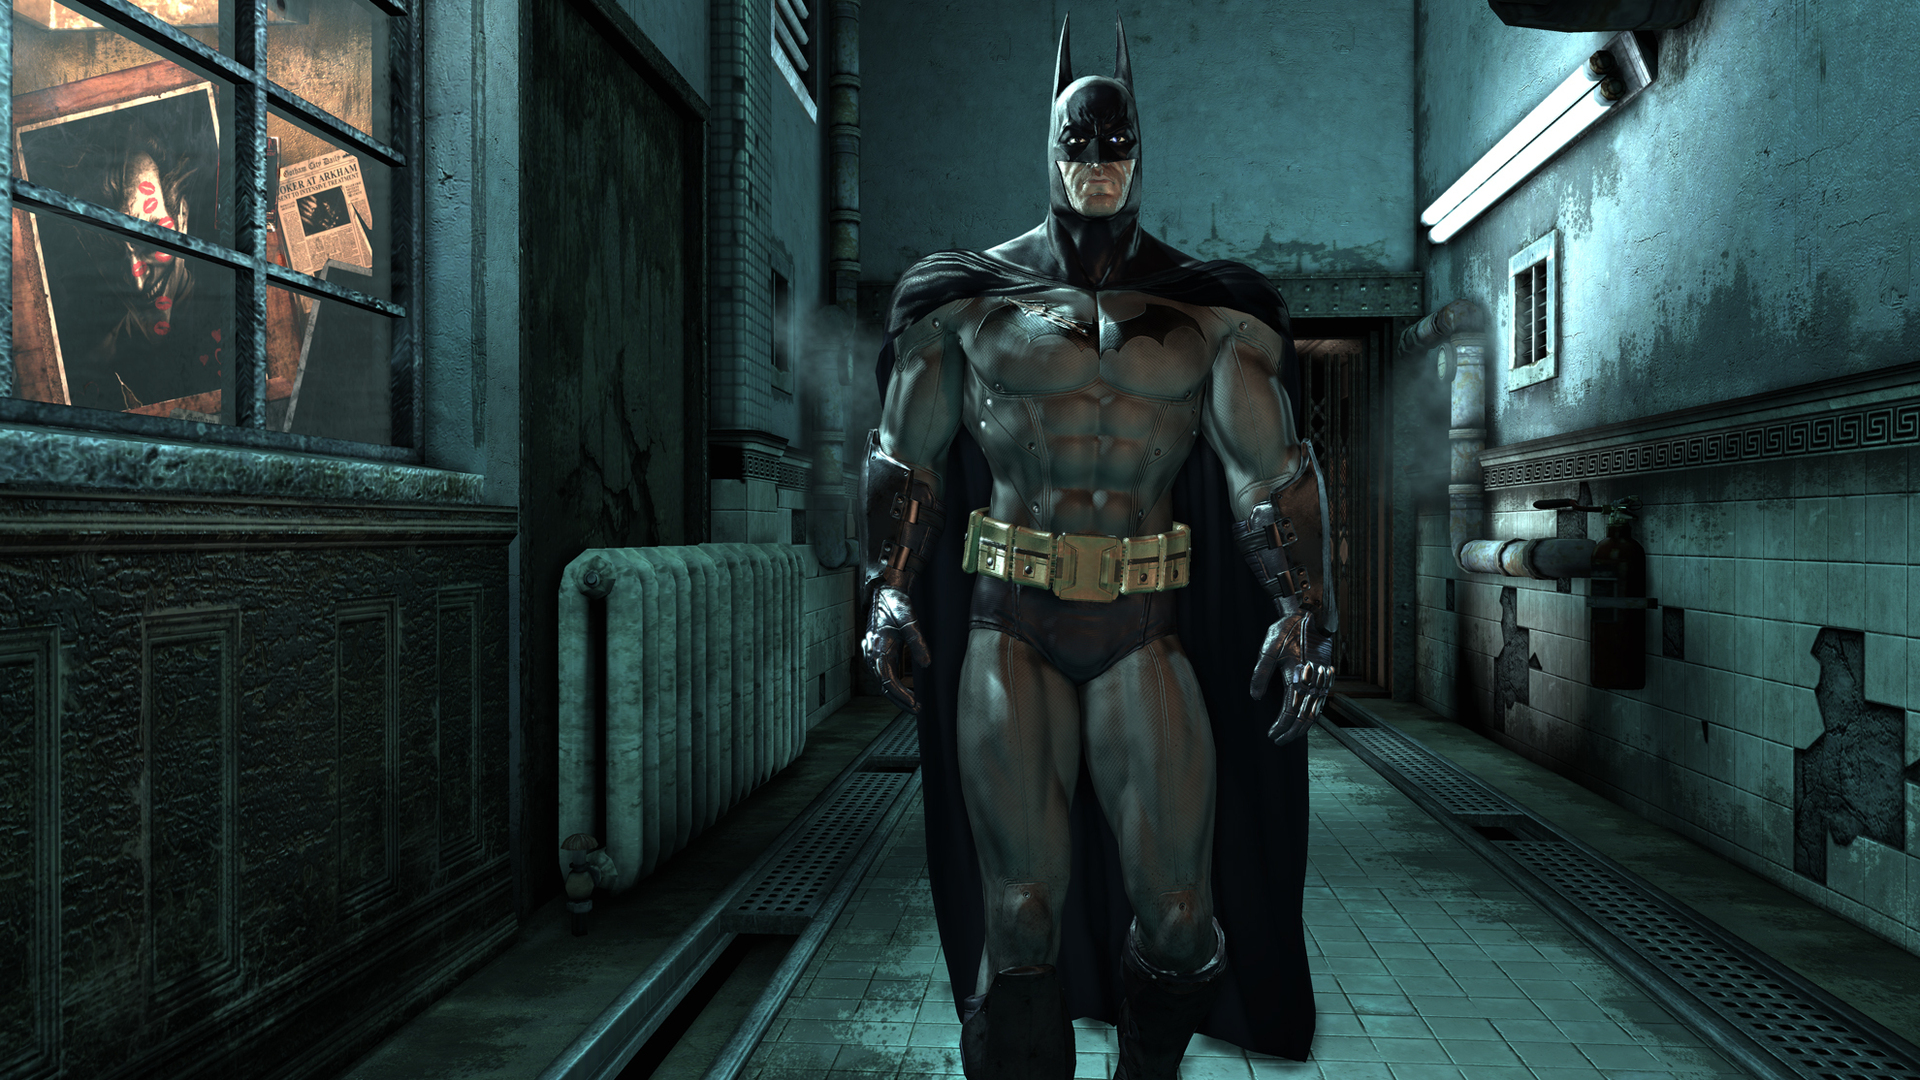 Скачать обои бесплатно Видеоигры, Бэтмен, Супергерой, Комиксы Dc, Batman: Аркхем Сити картинка на рабочий стол ПК